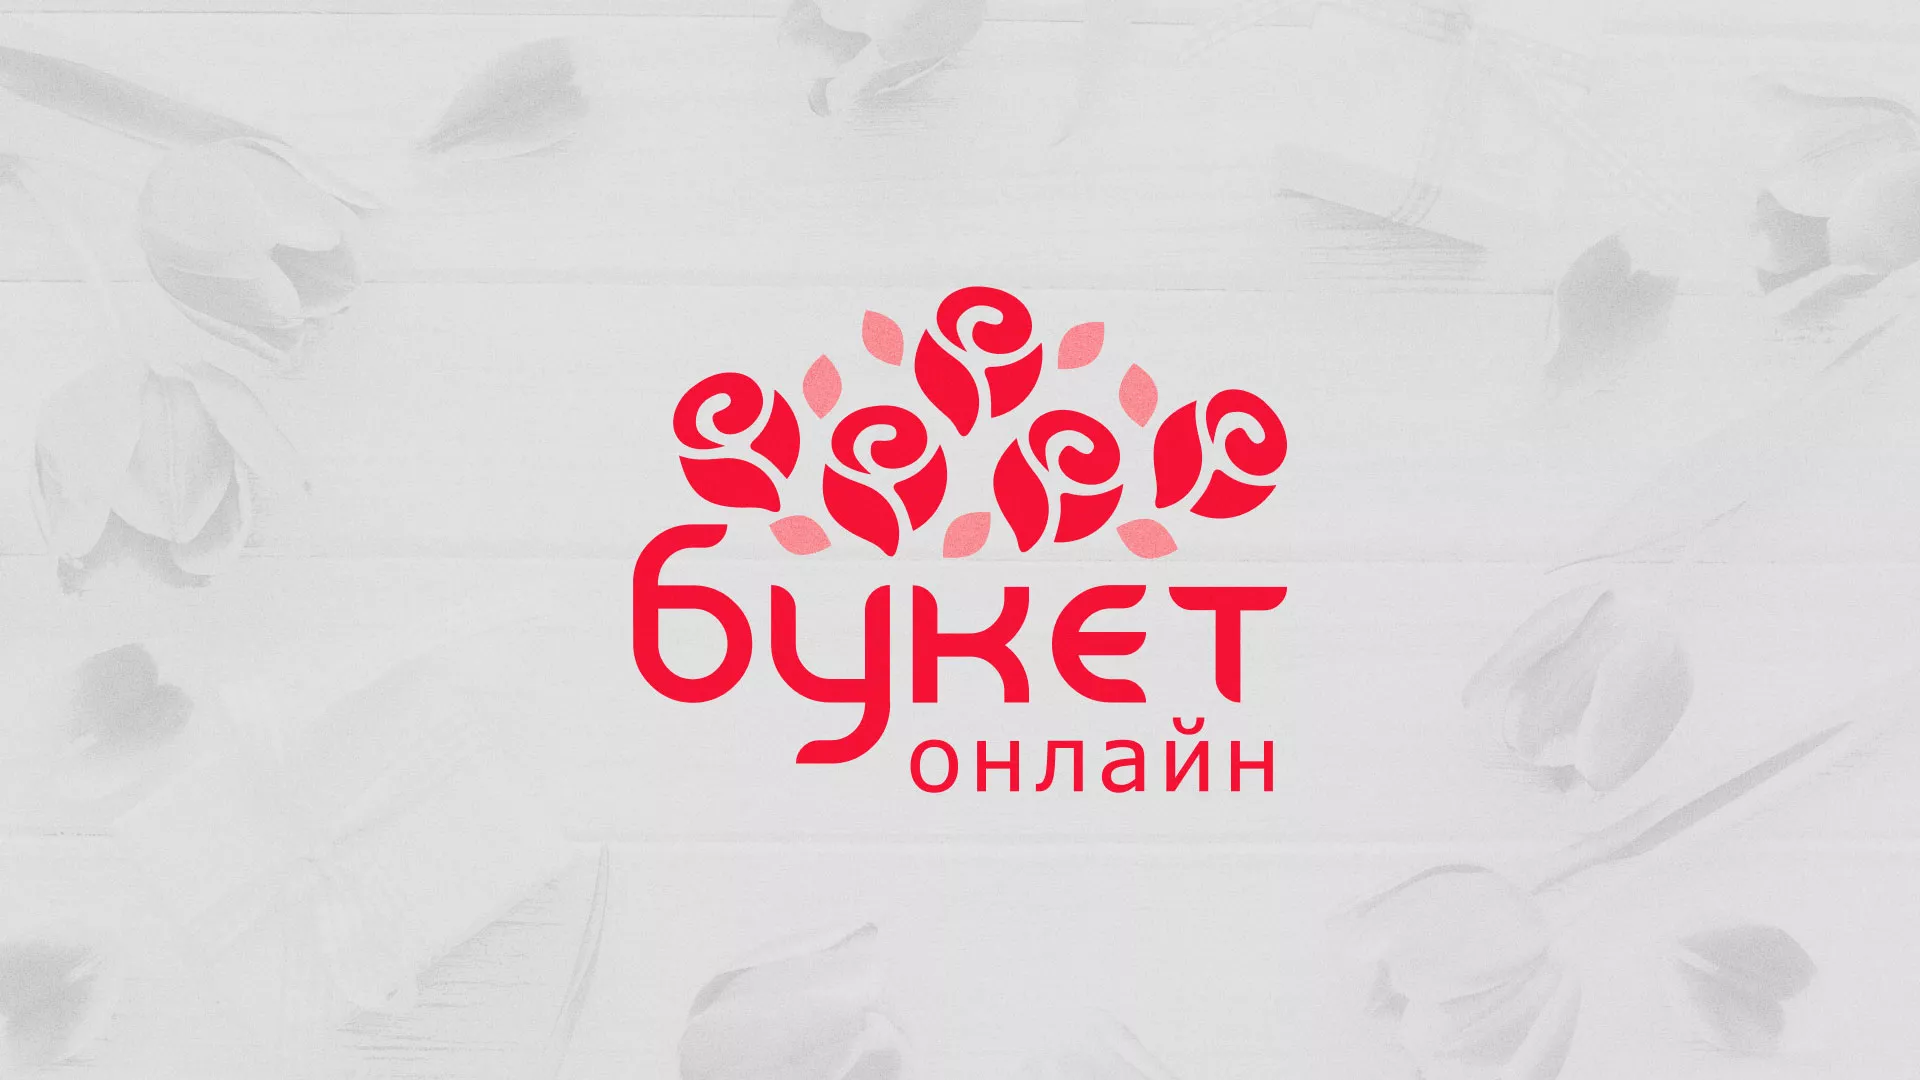 Создание интернет-магазина «Букет-онлайн» по цветам в Баймаке